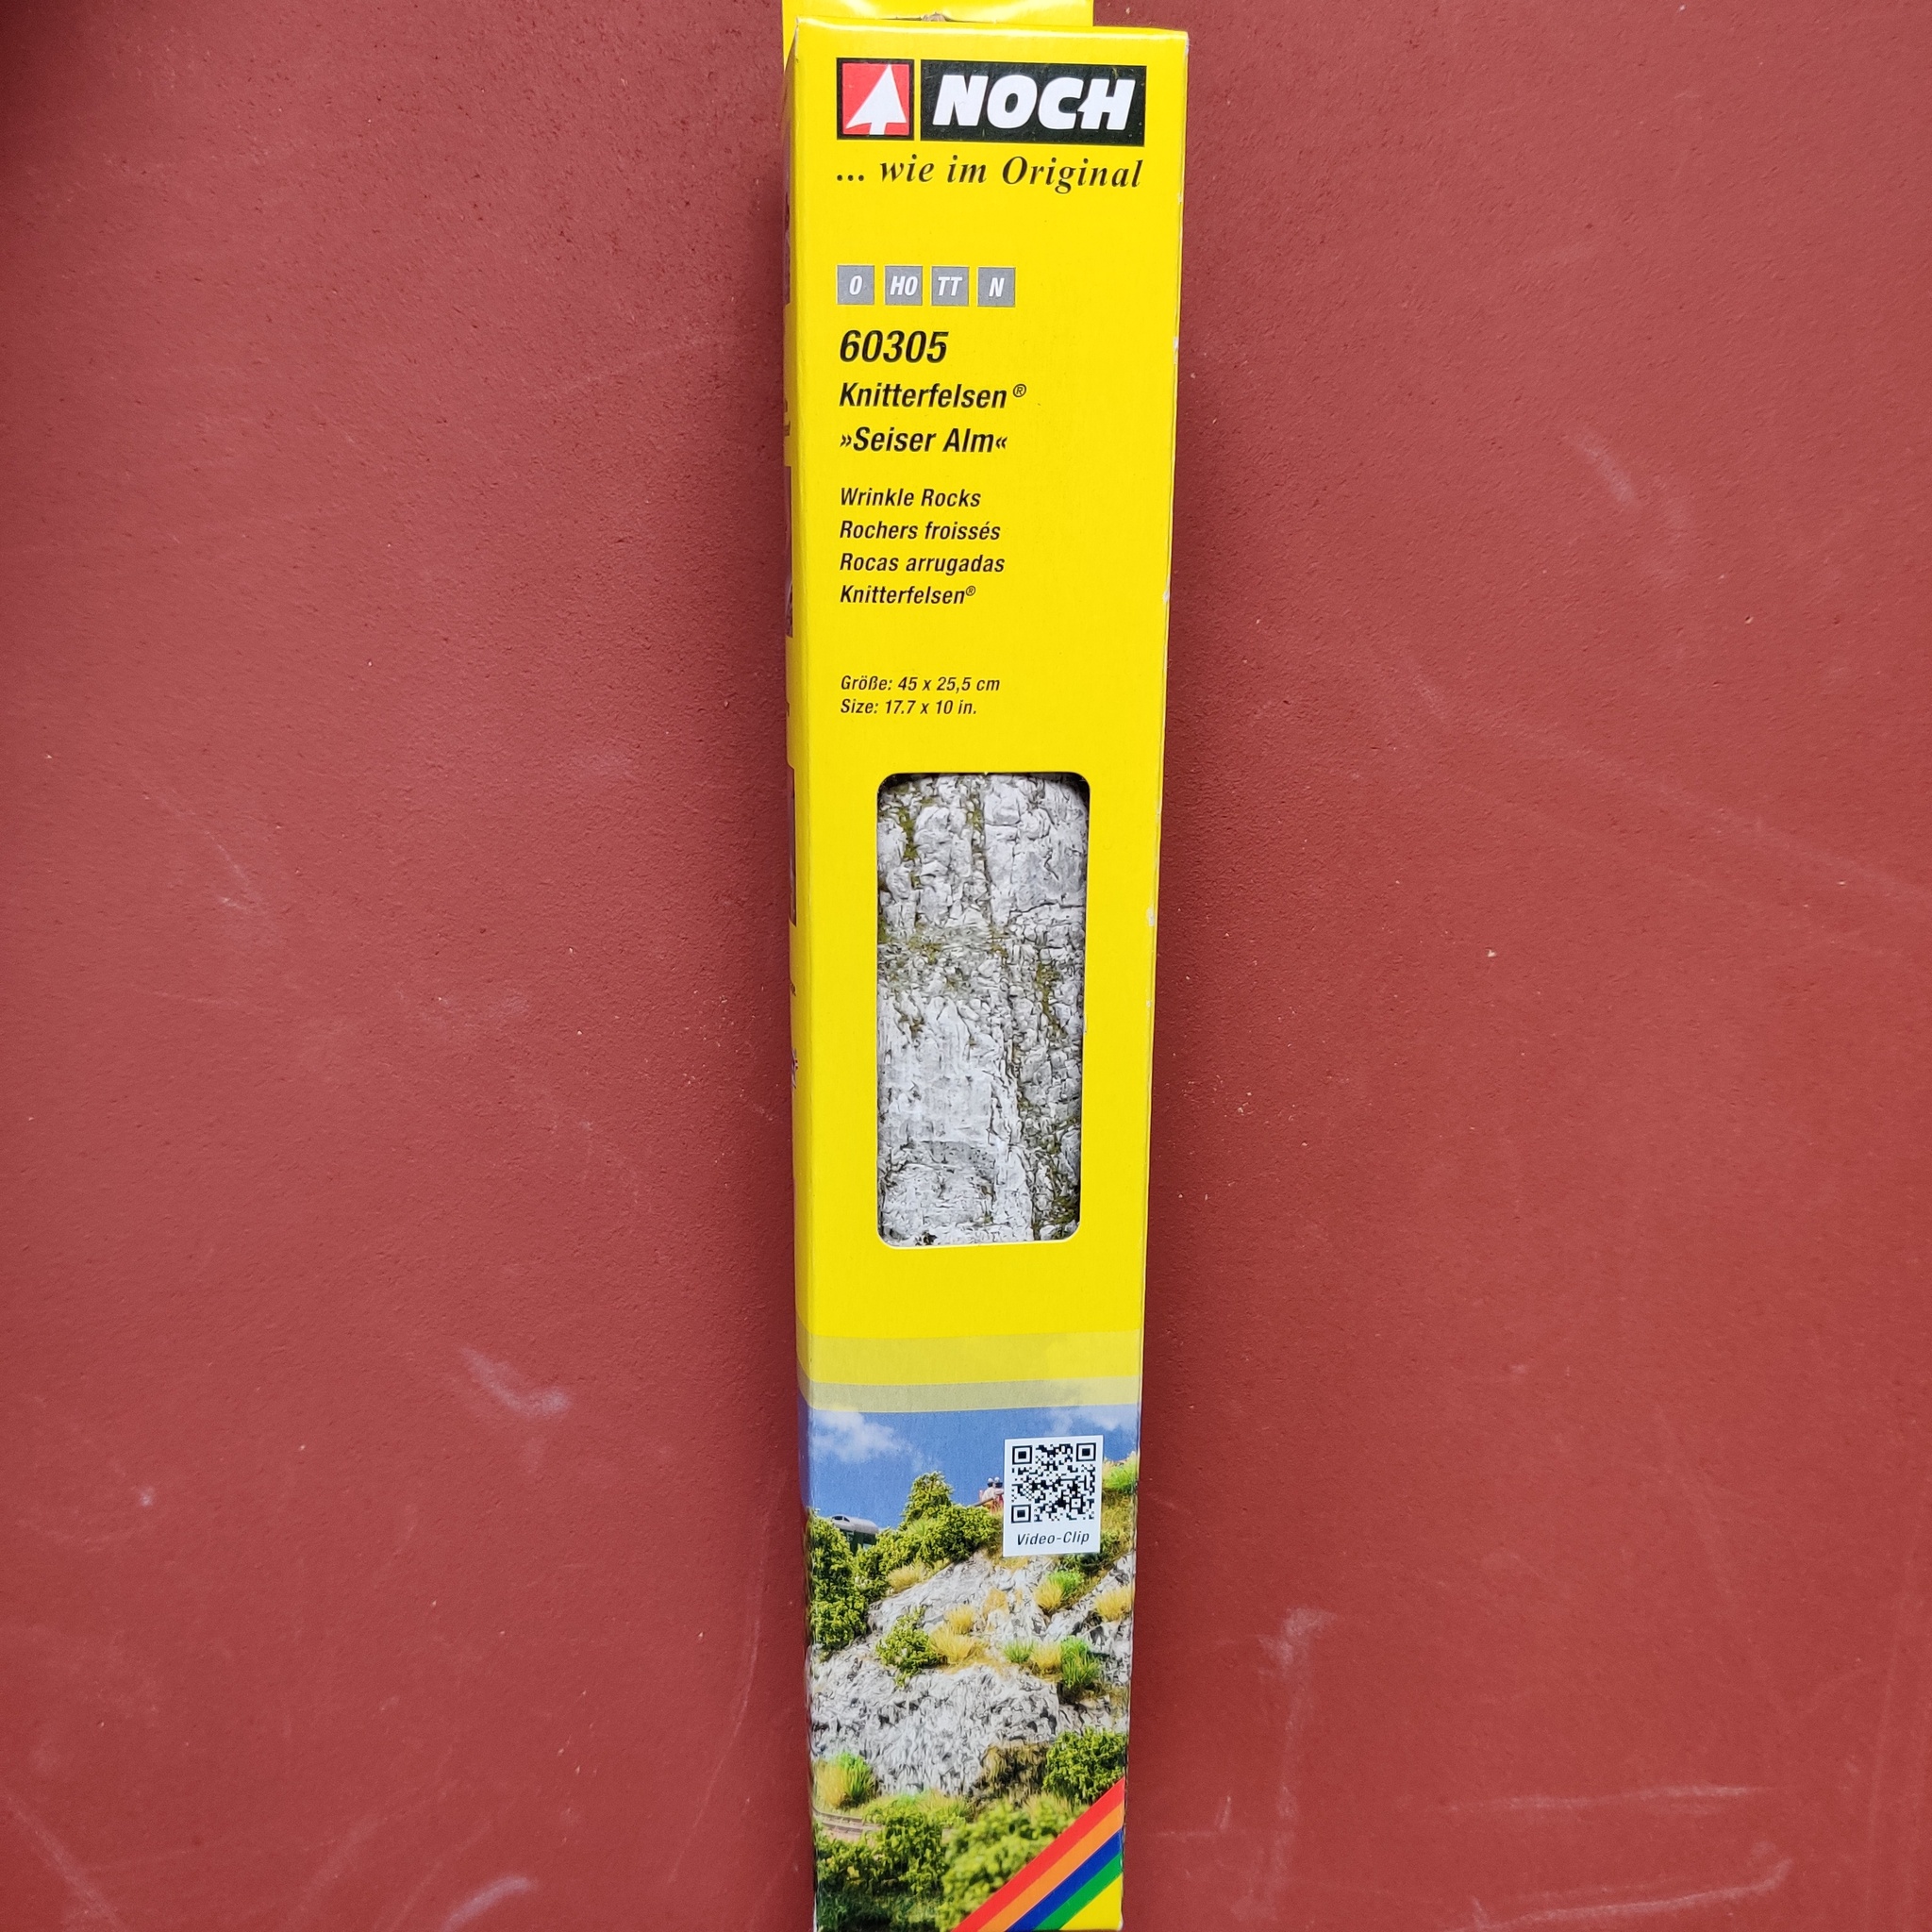 NOCH 60305 Skrynkelpapper Berg/Wrinkle Rocks “Großvenediger”, Storlek/Size 45 x 25,5 cm